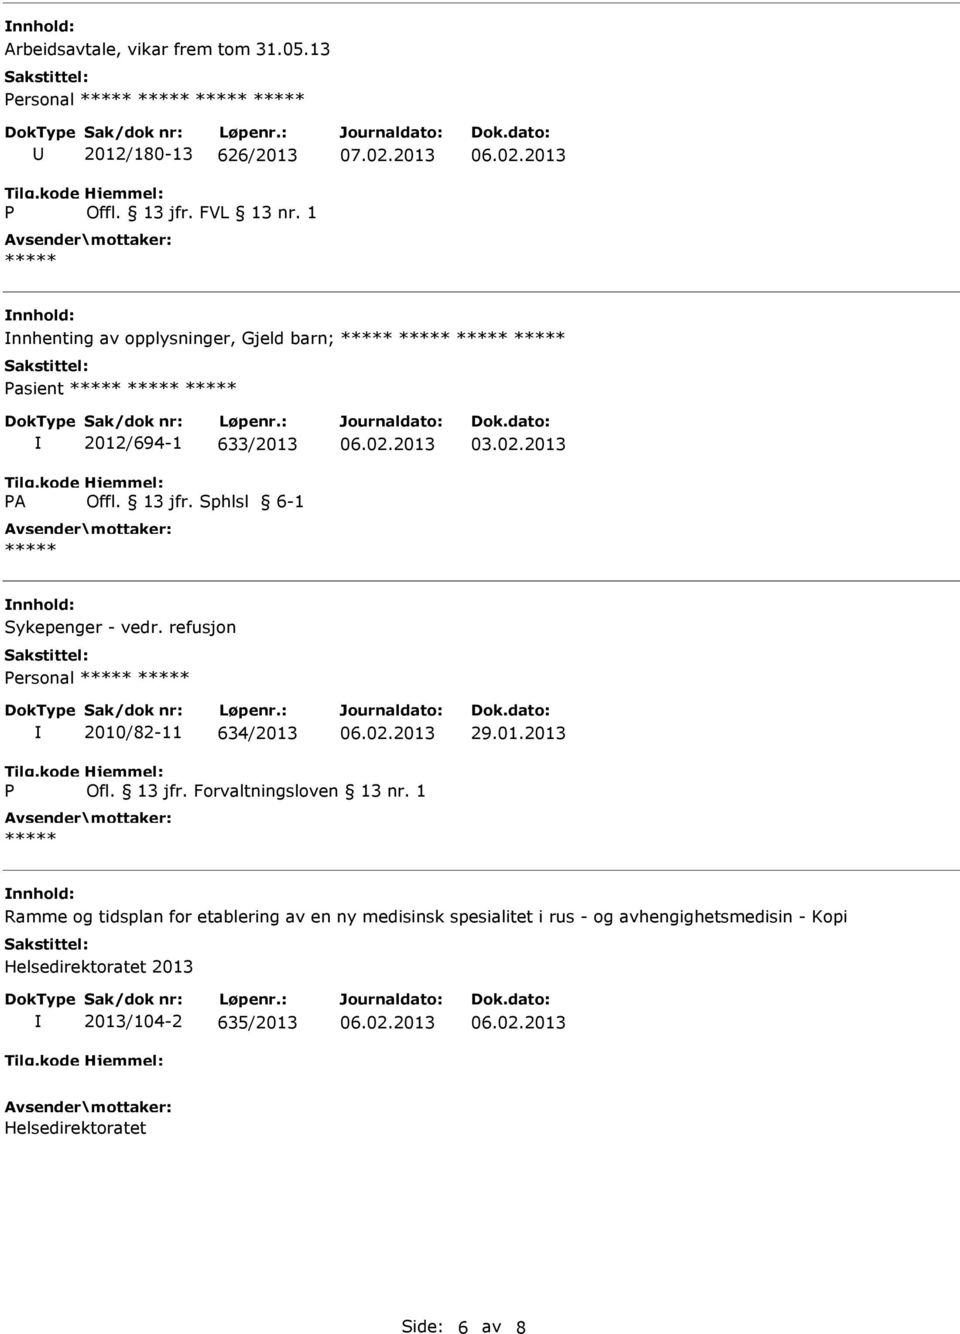 2013 Sykepenger - vedr. refusjon Personal 2010/82-11 634/2013 29.01.2013 P Ofl. 13 jfr. Forvaltningsloven 13 nr.